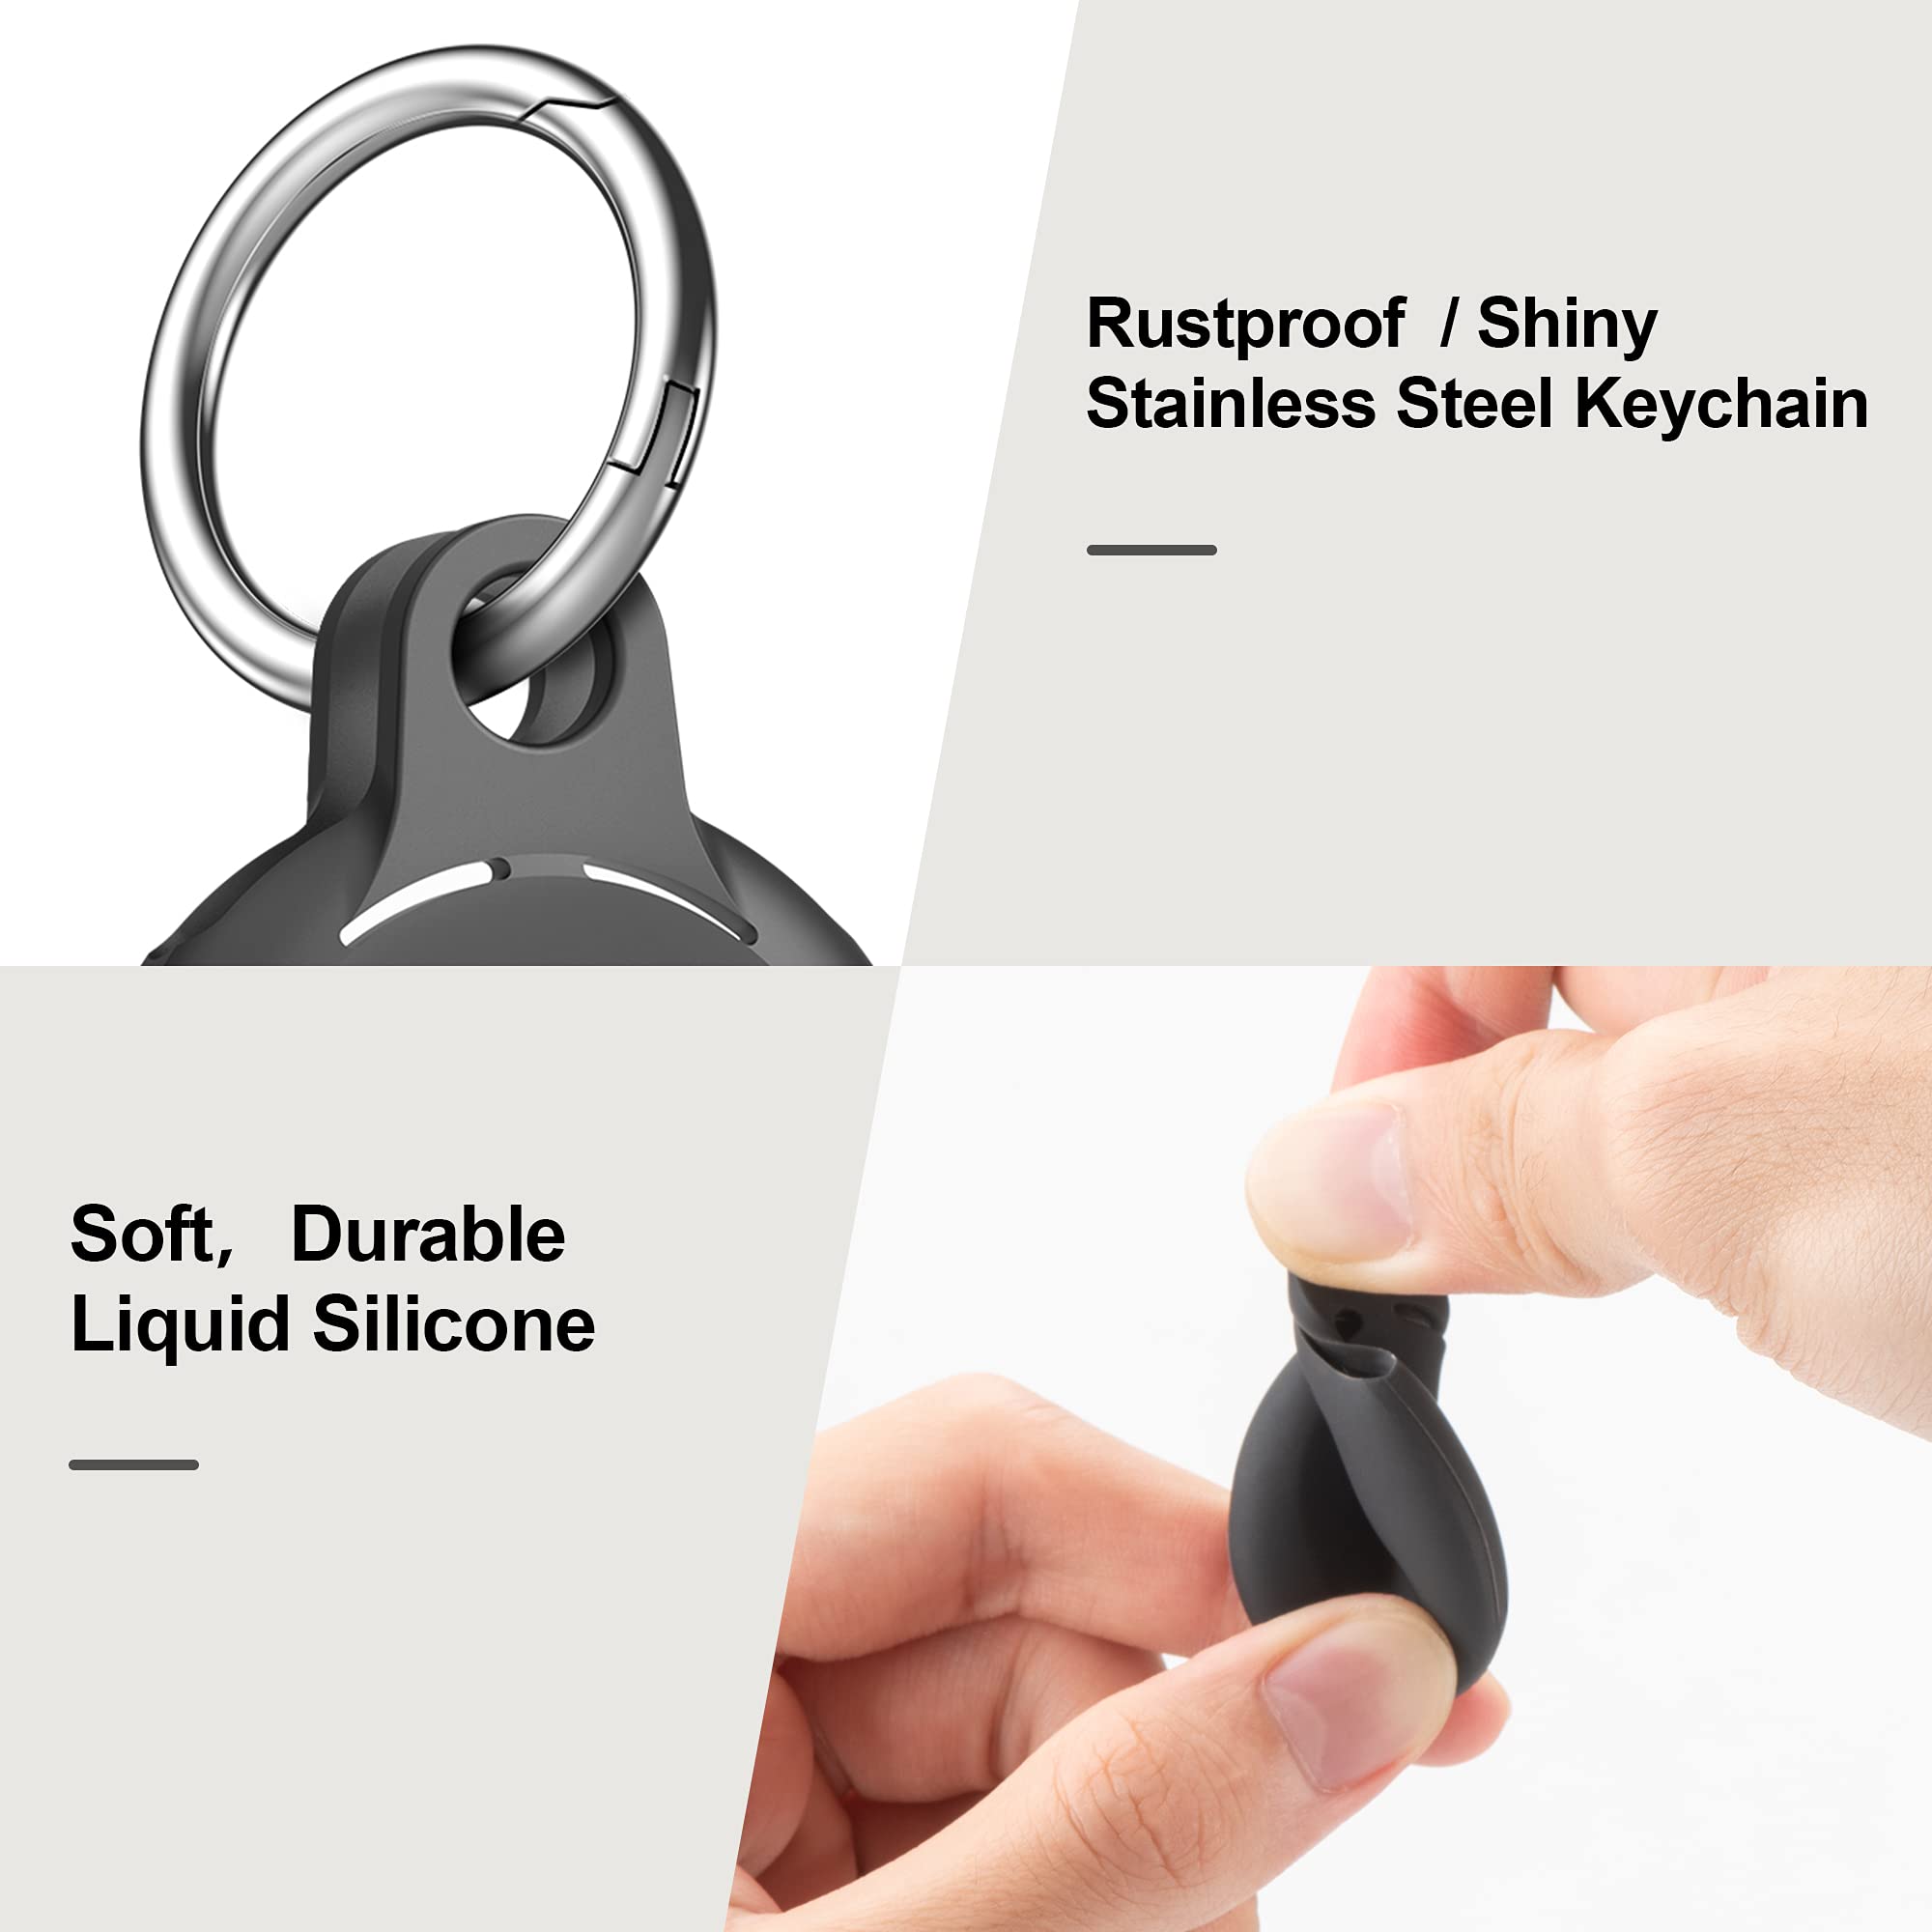 4-Pack Black New Premium Silicone Apple AirTag Cases - Black